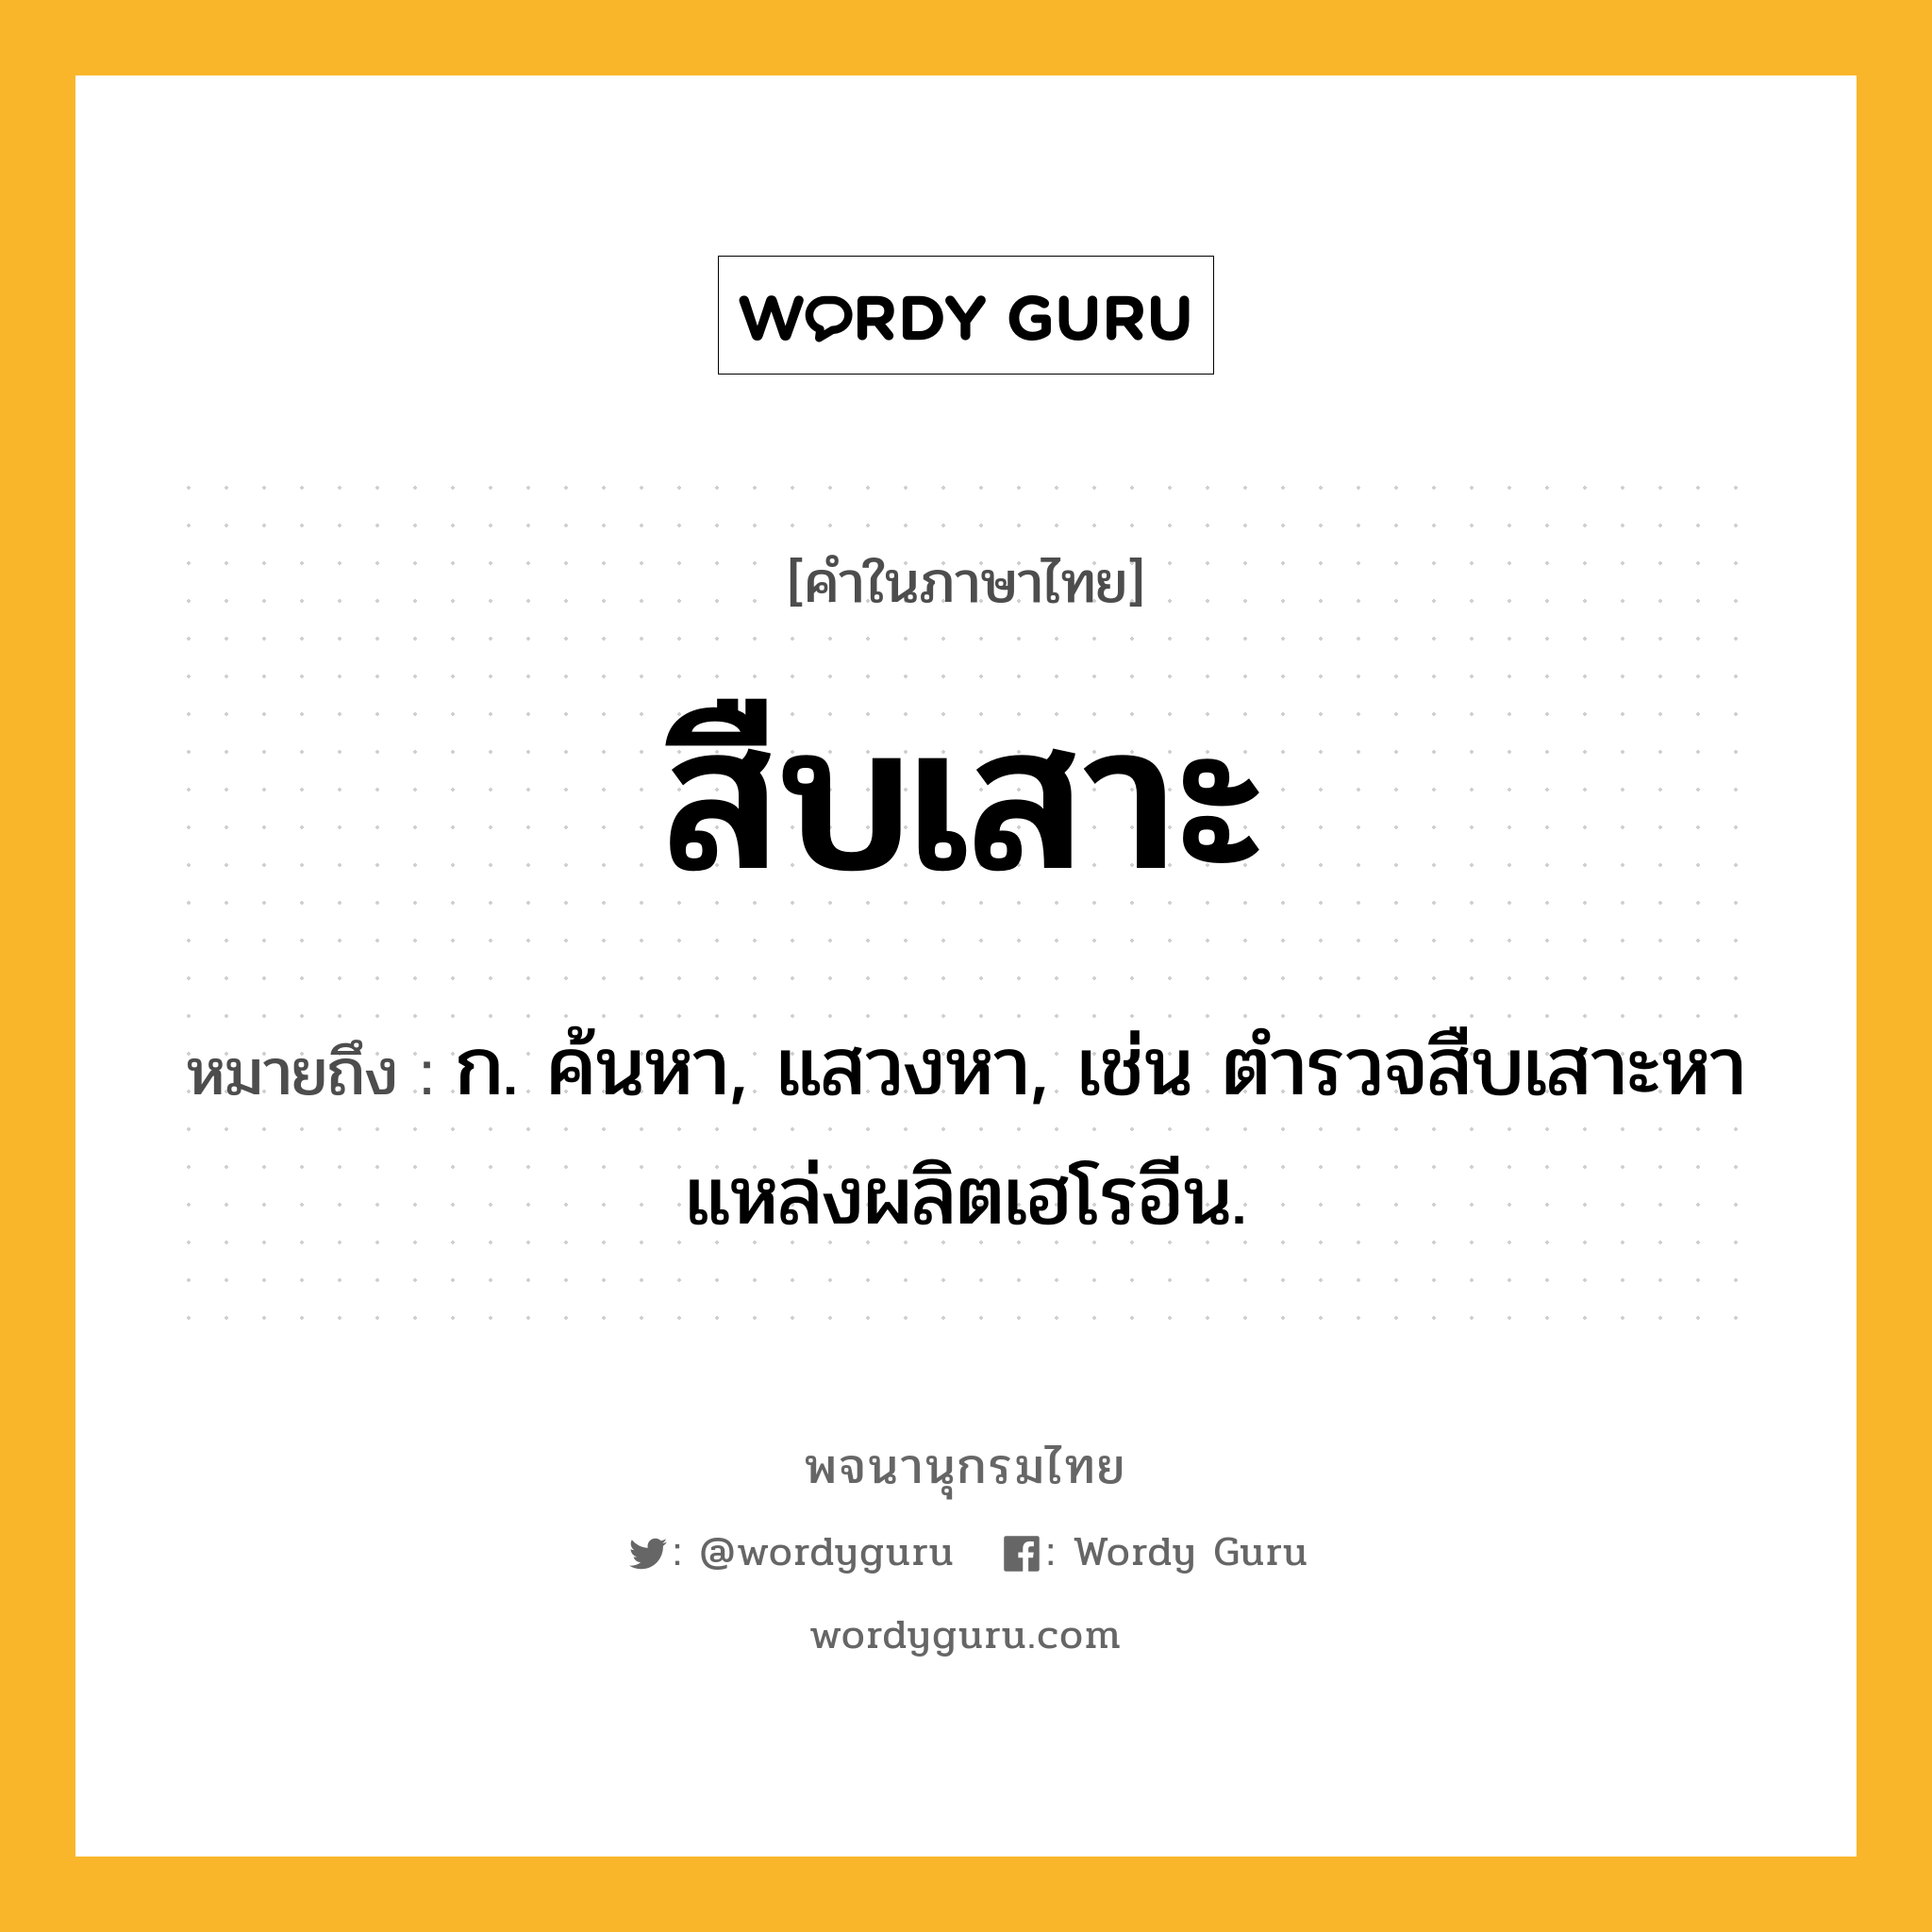 สืบเสาะ ความหมาย หมายถึงอะไร?, คำในภาษาไทย สืบเสาะ หมายถึง ก. ค้นหา, แสวงหา, เช่น ตำรวจสืบเสาะหาแหล่งผลิตเฮโรอีน.